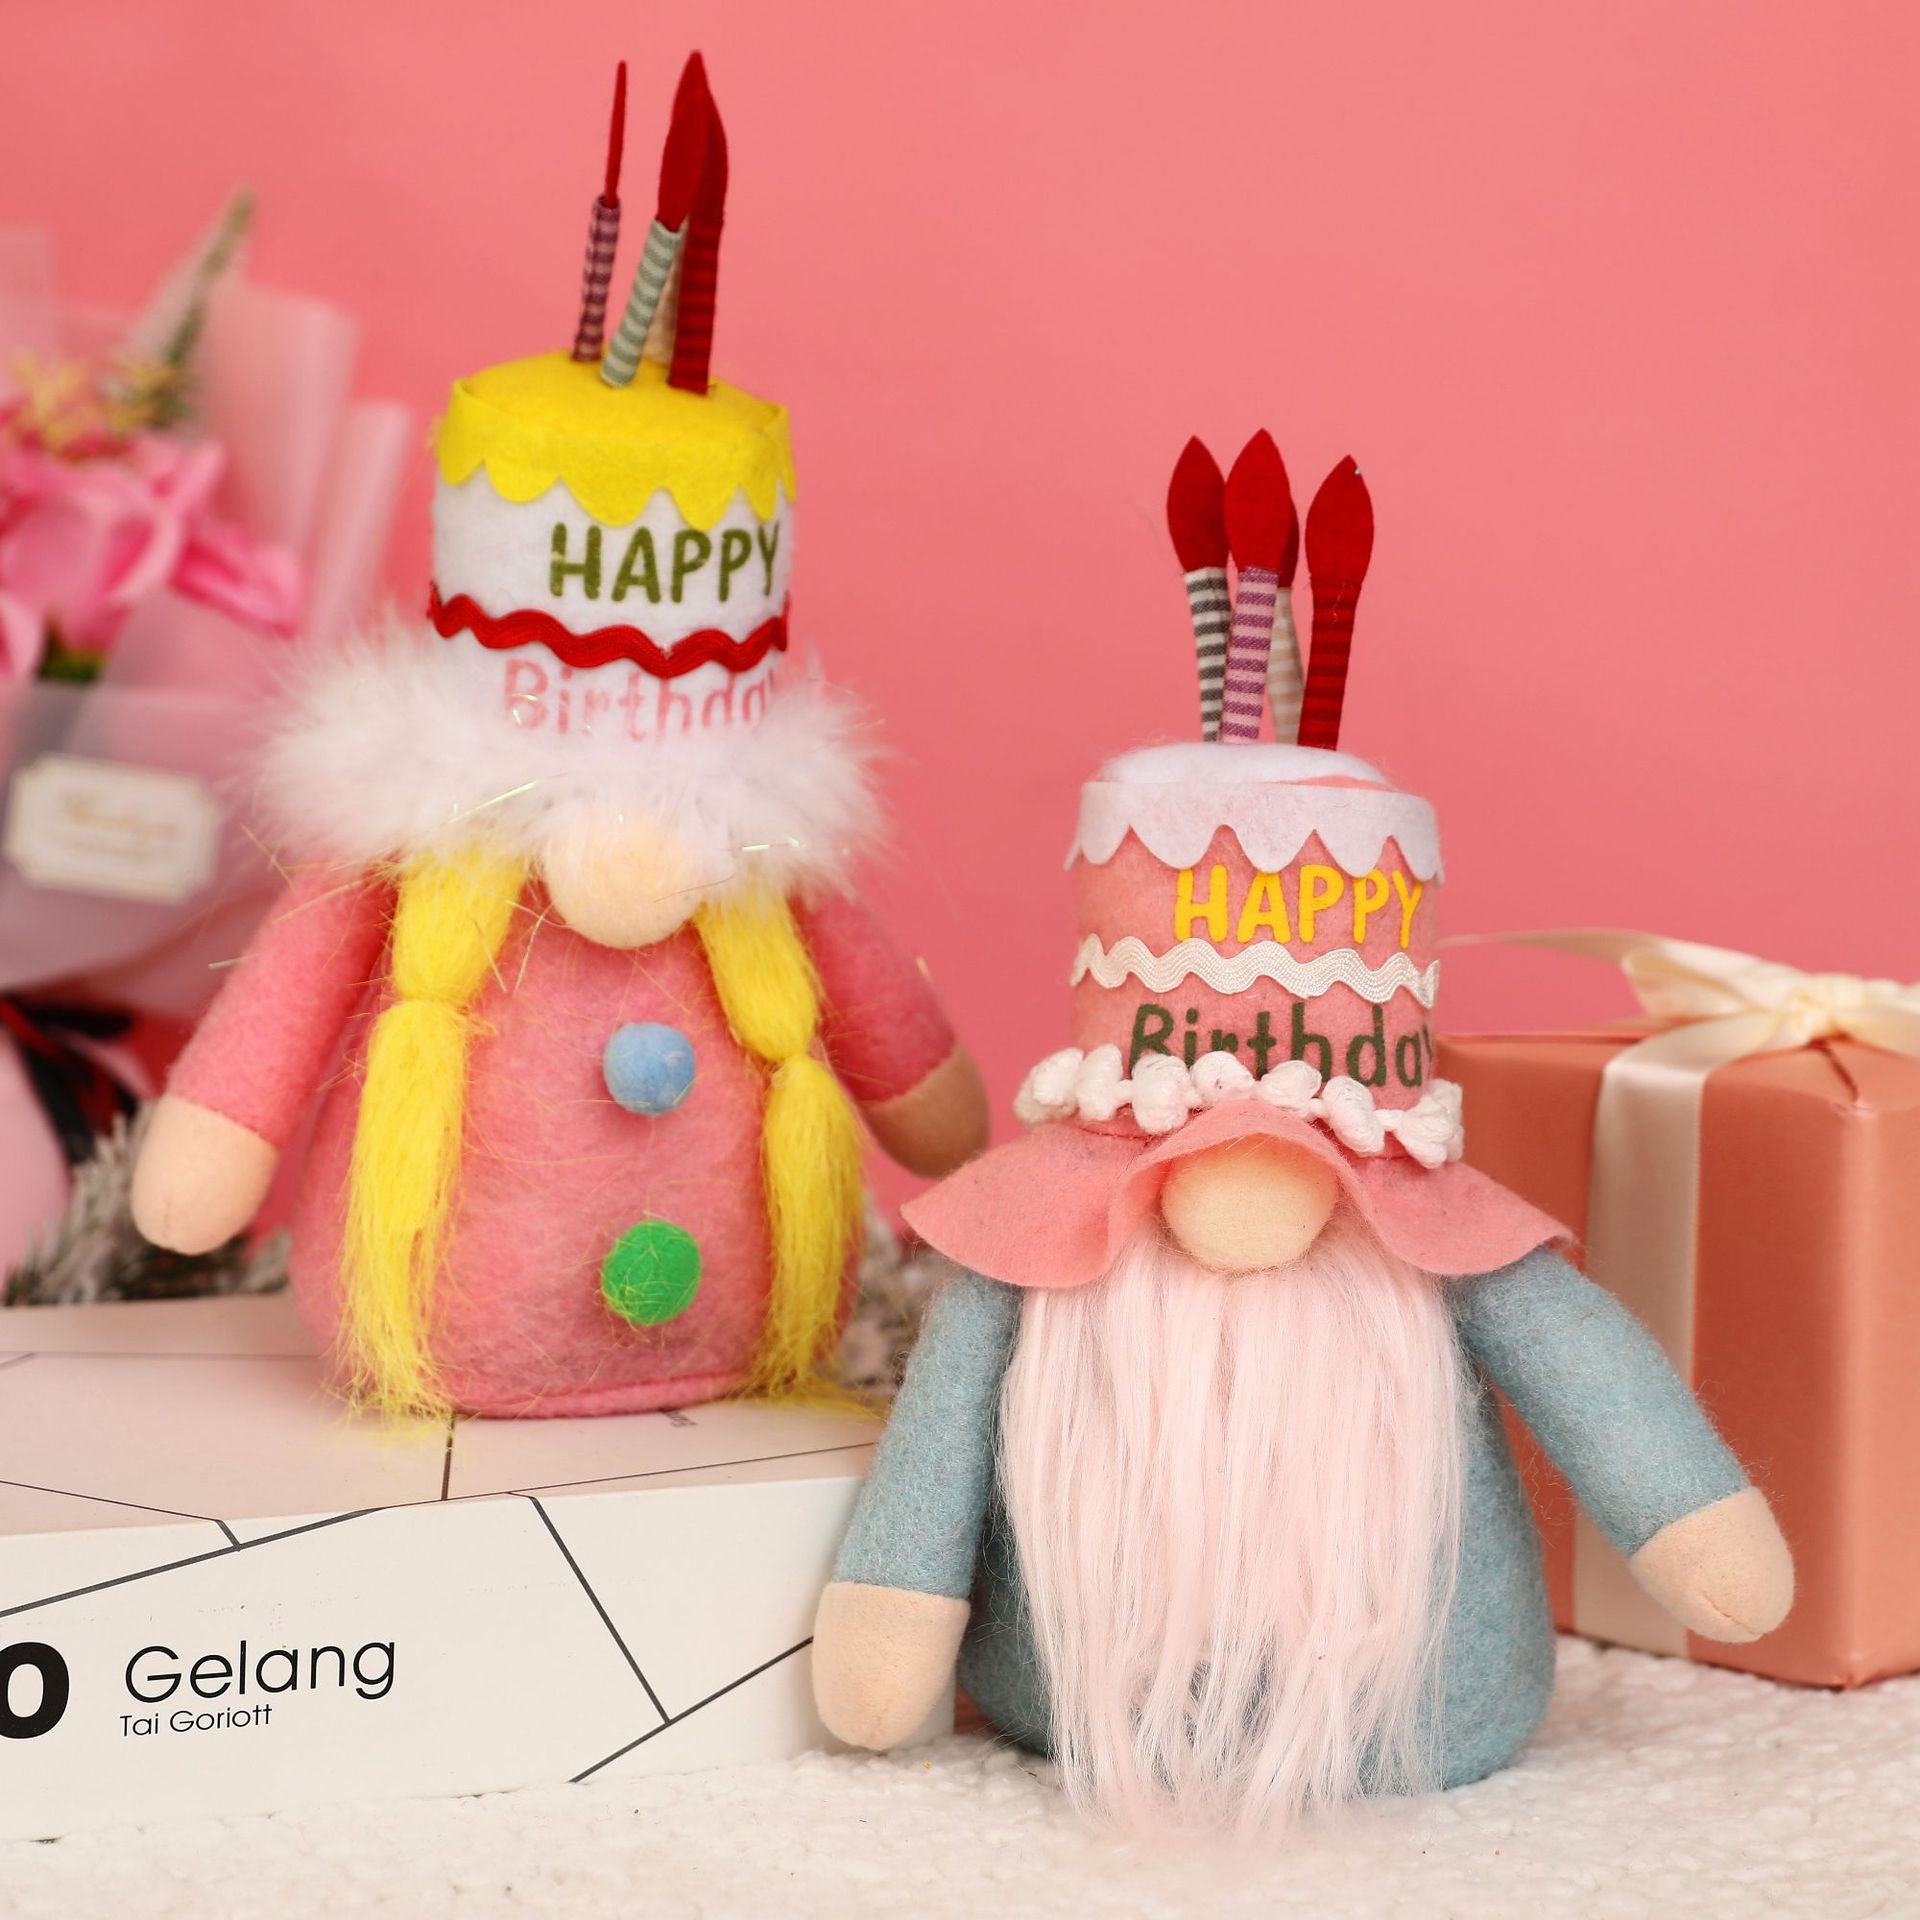 Happy Birthday Gnome, Happy Birthday Garden Gnome, Gnomes Singing Happy Birthday, 